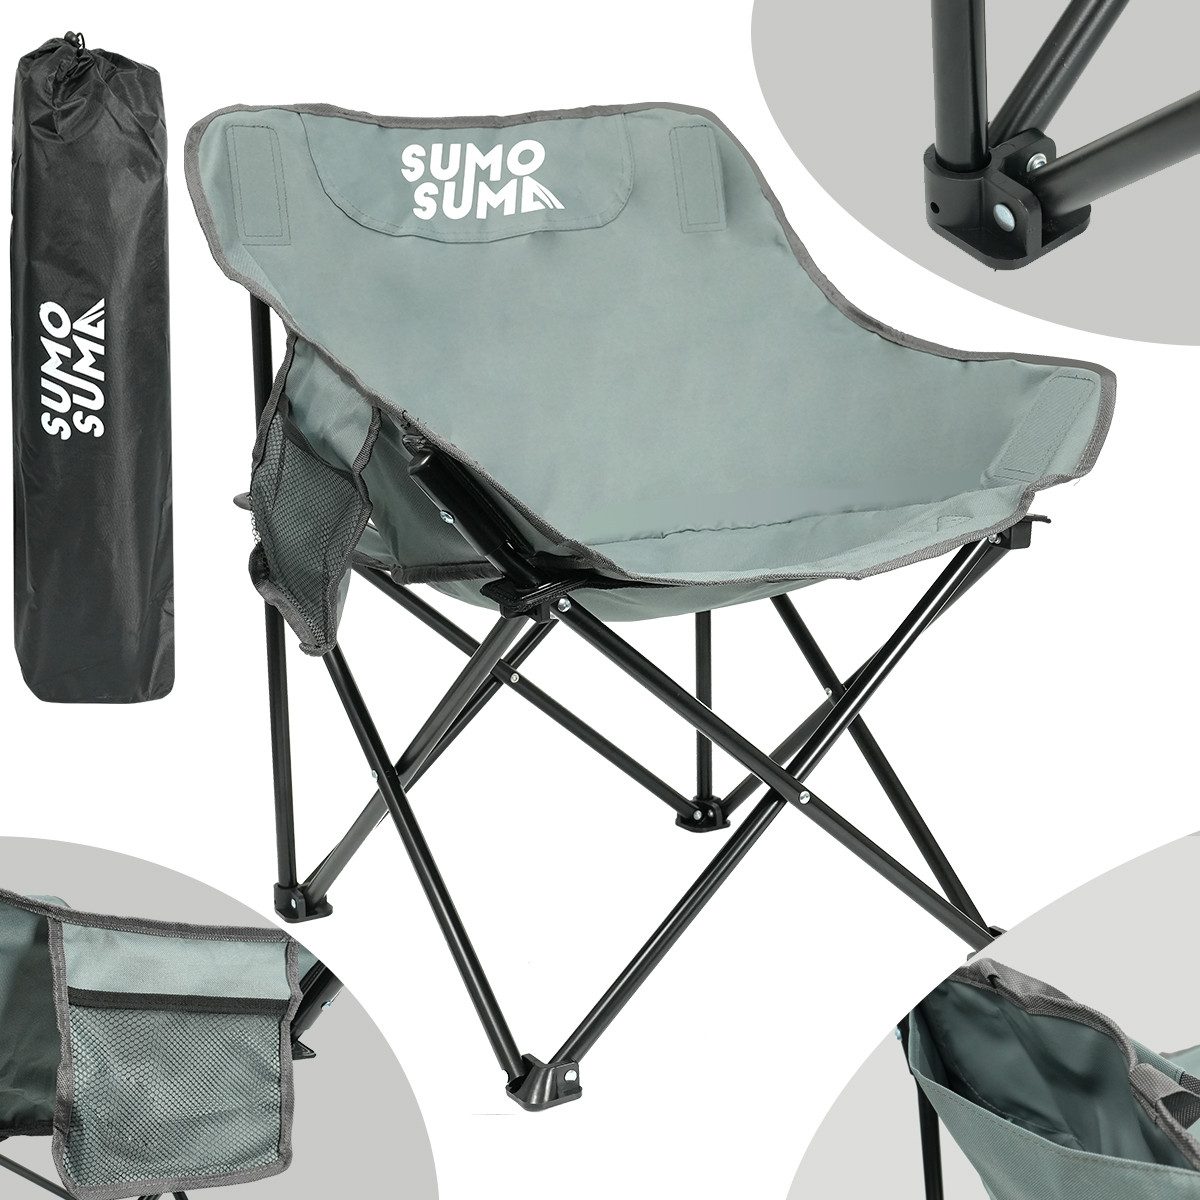 Sumosuma Campingstuhl Faltbar Camping Stuhl, Klappstuhl bis 160 kg, aus 600D Oxford-Gewebe (1 St), Mit hoher Rückenlehne, Tragegriff und Seitentasche